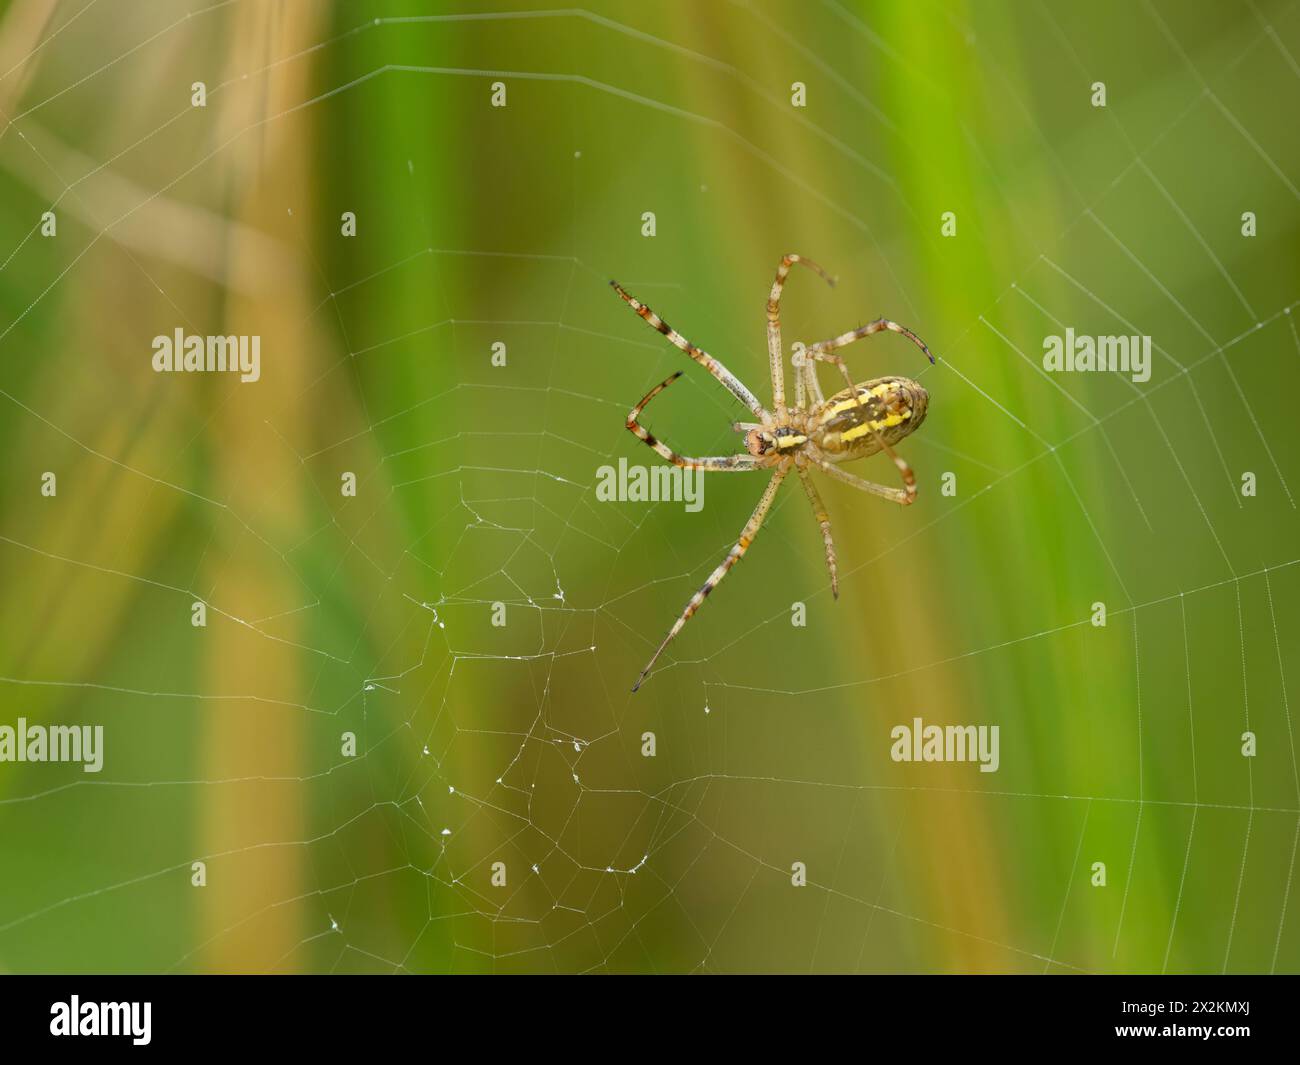 Une guêpe araignée assise dans sa toile, journée ensoleillée à Vienne Autriche Autriche Banque D'Images